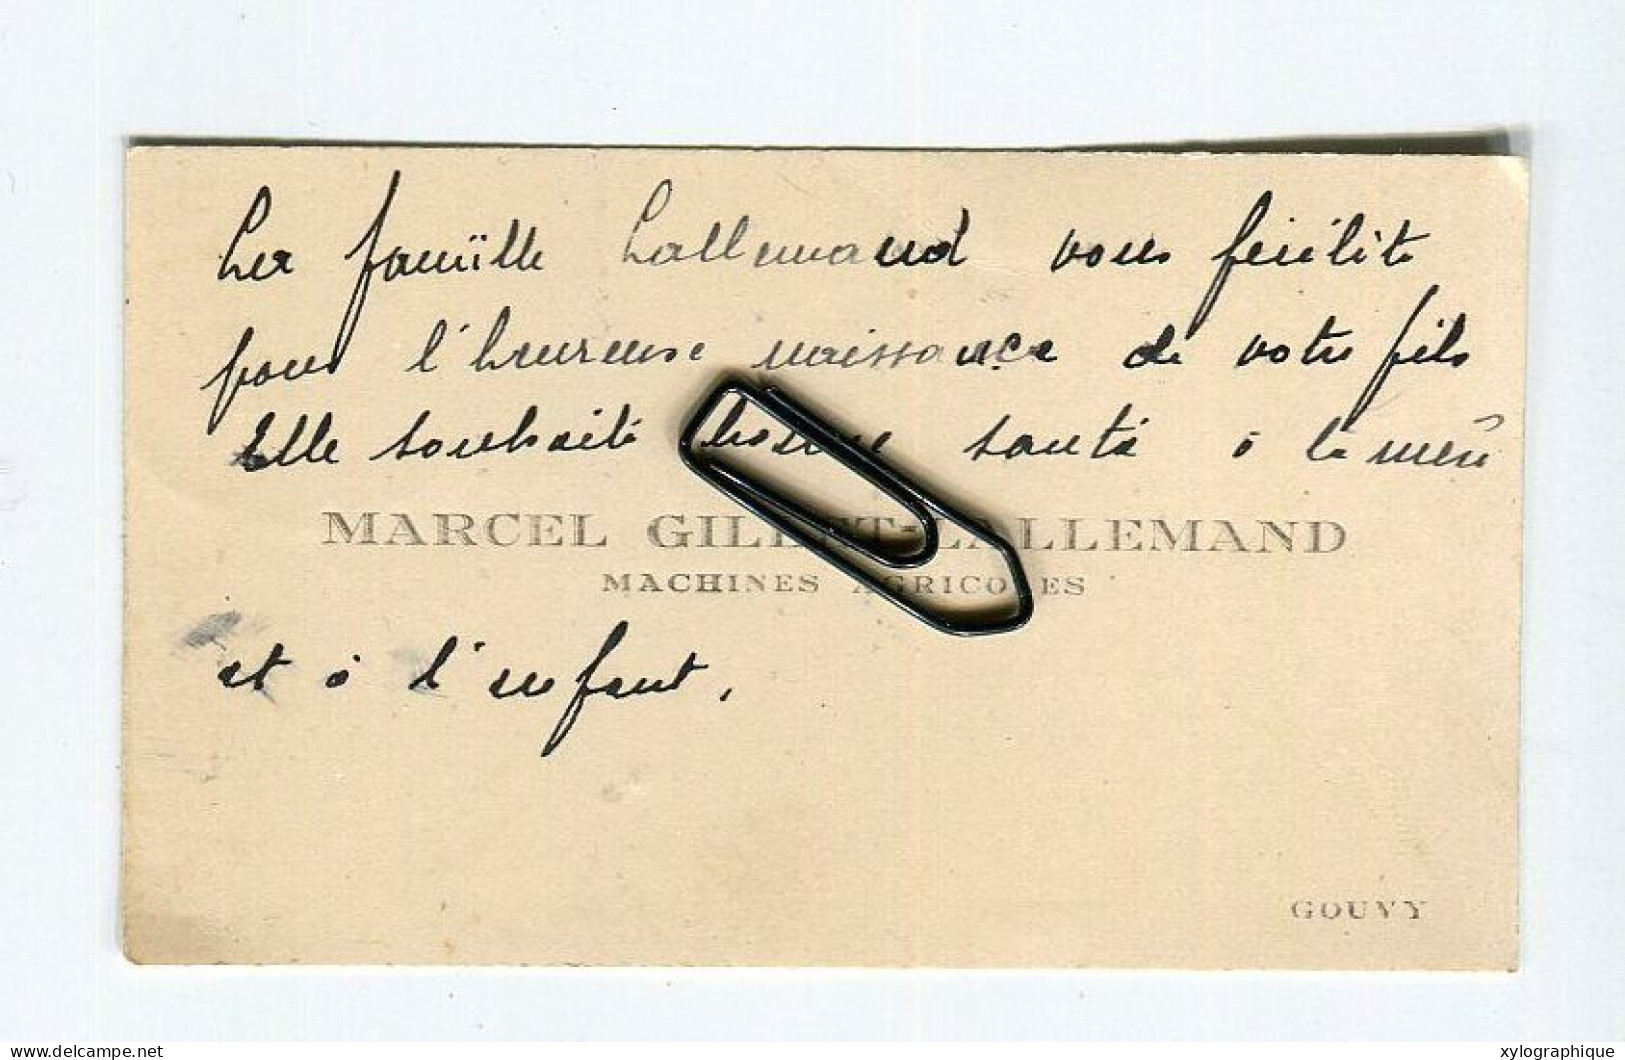 Gouvy Limerlé - Carte De Visite Ca. 1930, Marcel Gillet Lallemand, Machines Agricoles, Pour Famille Gérardy Warland - Cartes De Visite